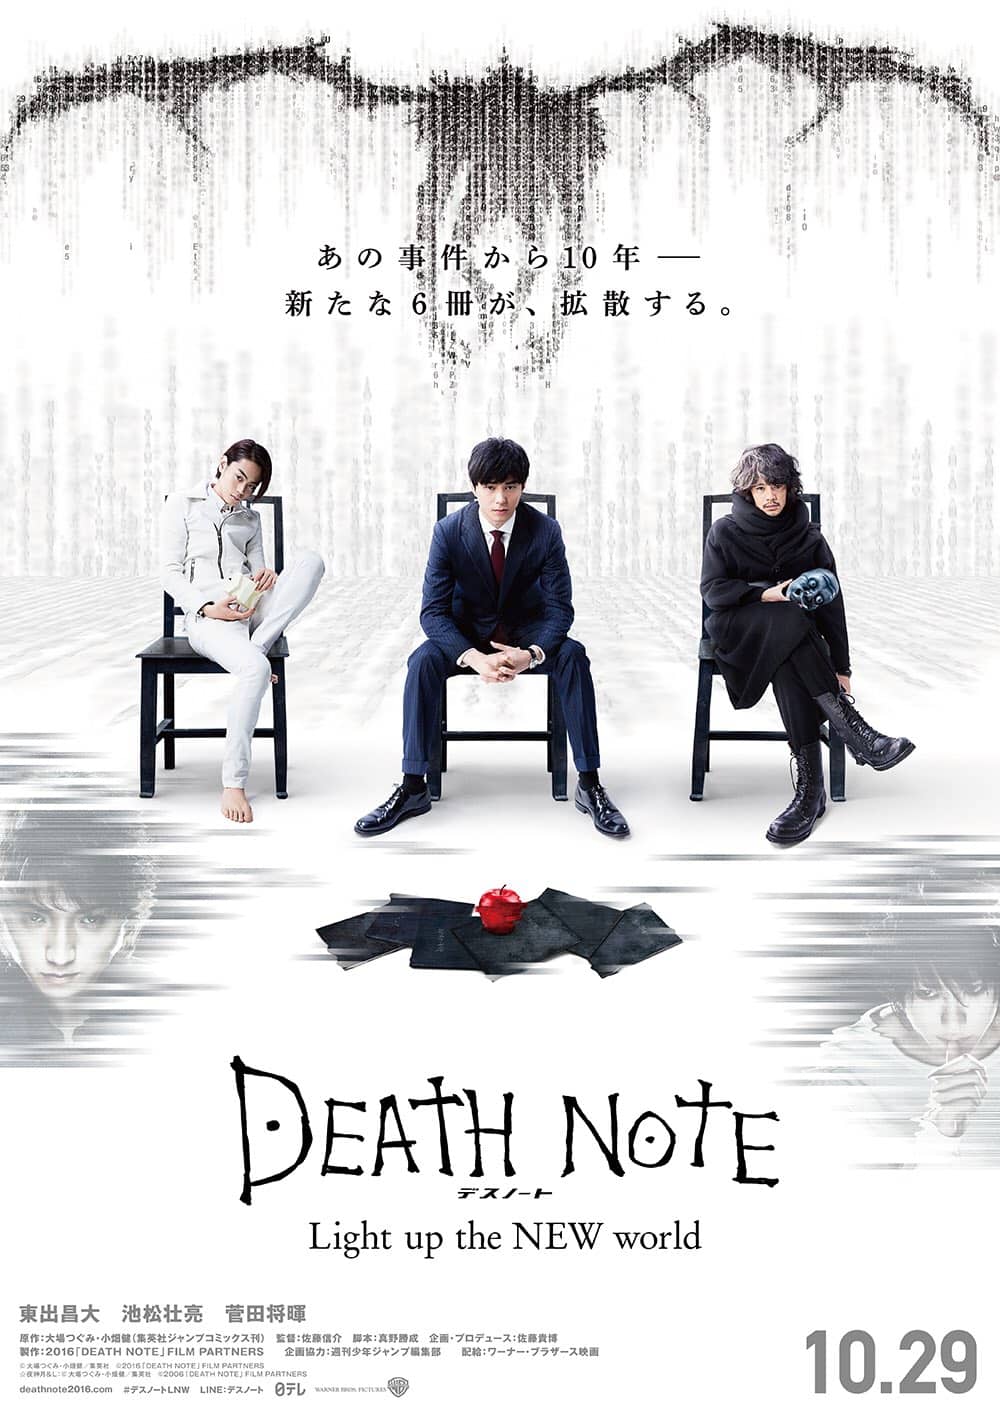 ดูหนังออนไลน์ฟรี Death Note Light Up the New World (2016) สมุดมรณะ